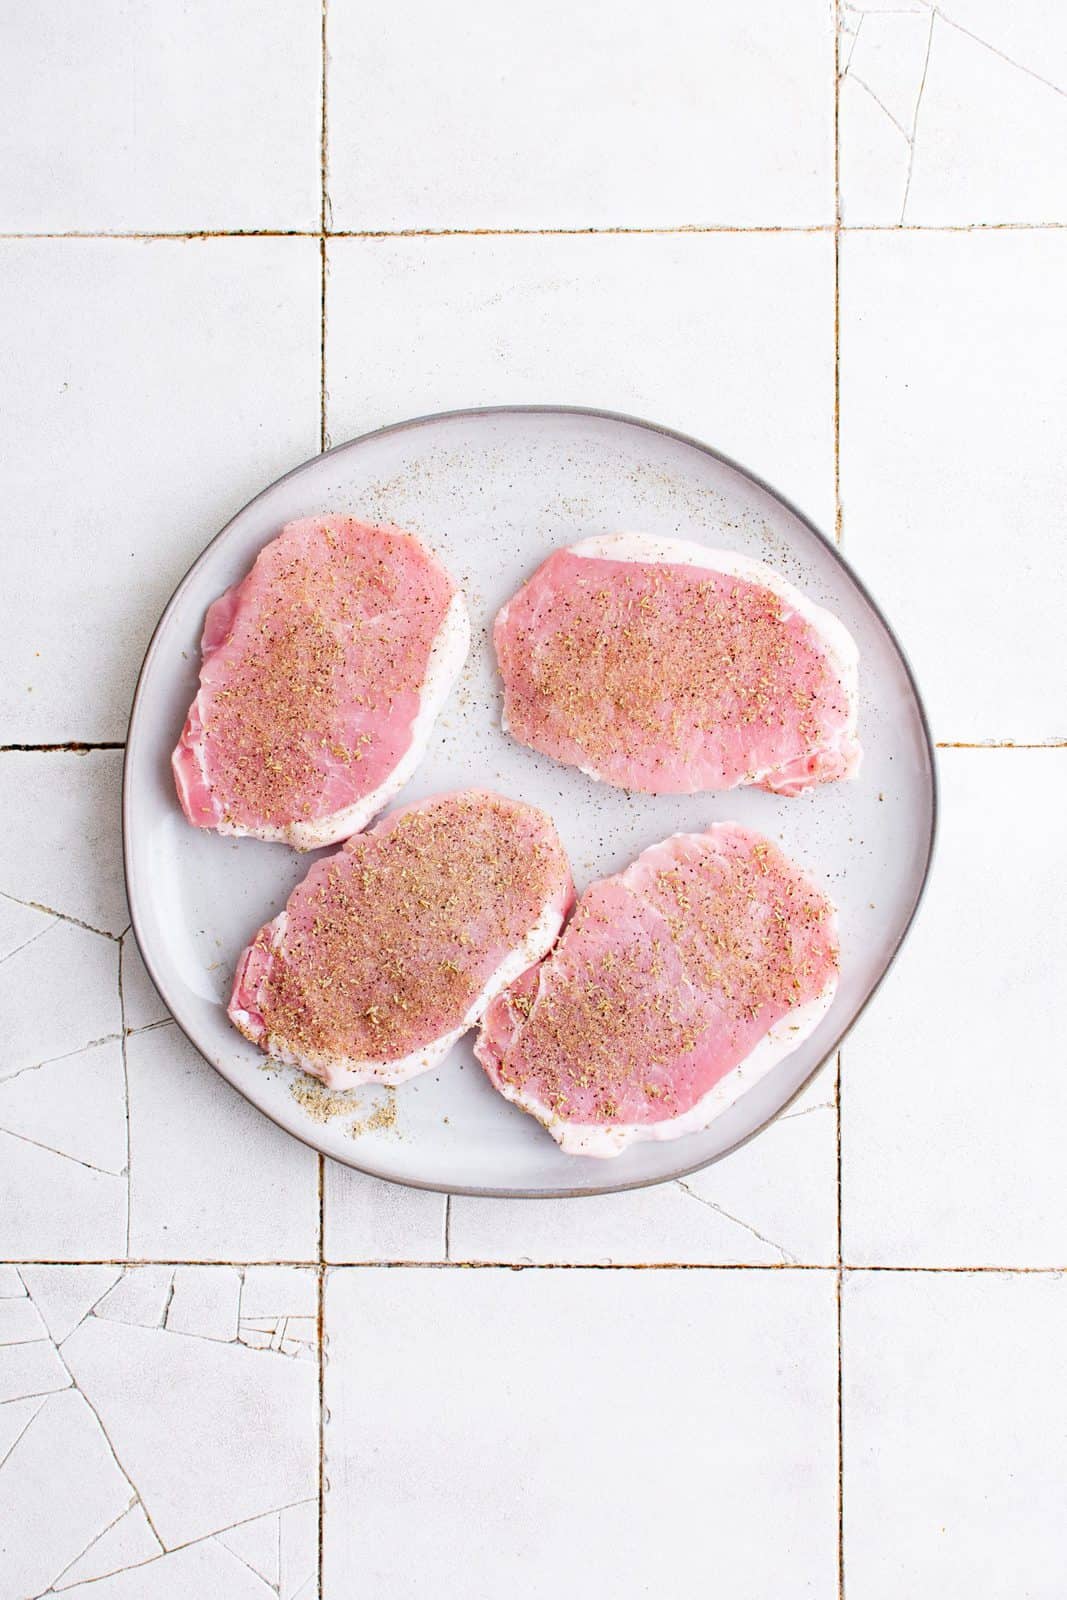 Pork chops on plate seasoned with seasonings.